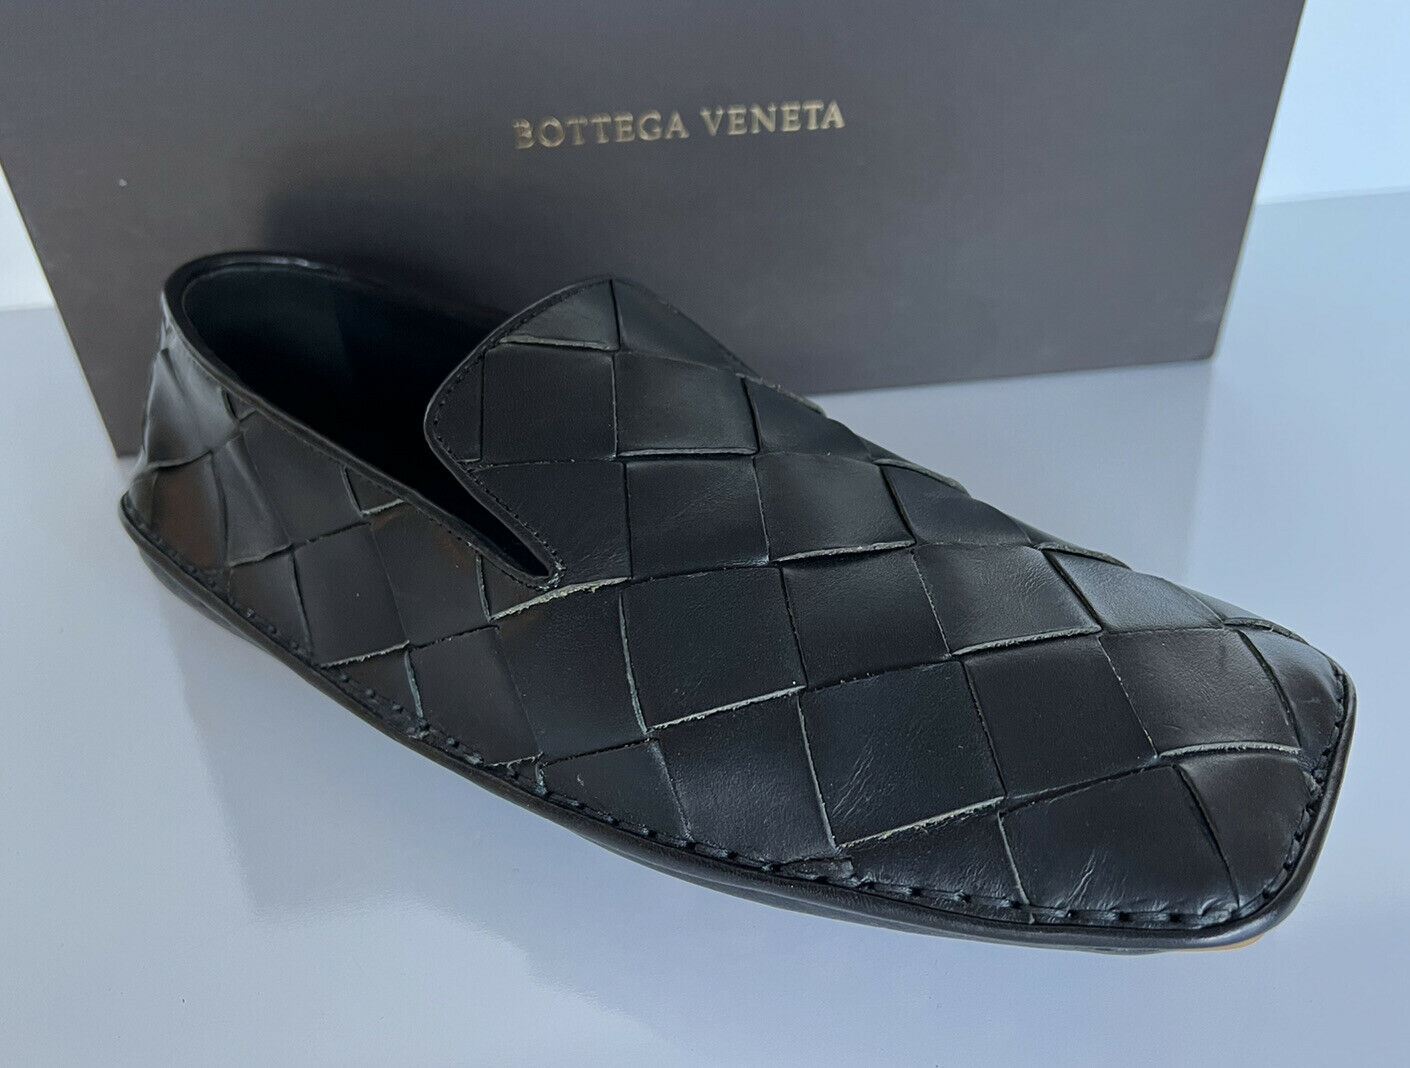 Черные кожаные туфли Bottega Veneta Douglas Intrecciato 740 долларов США 10, США 578309 